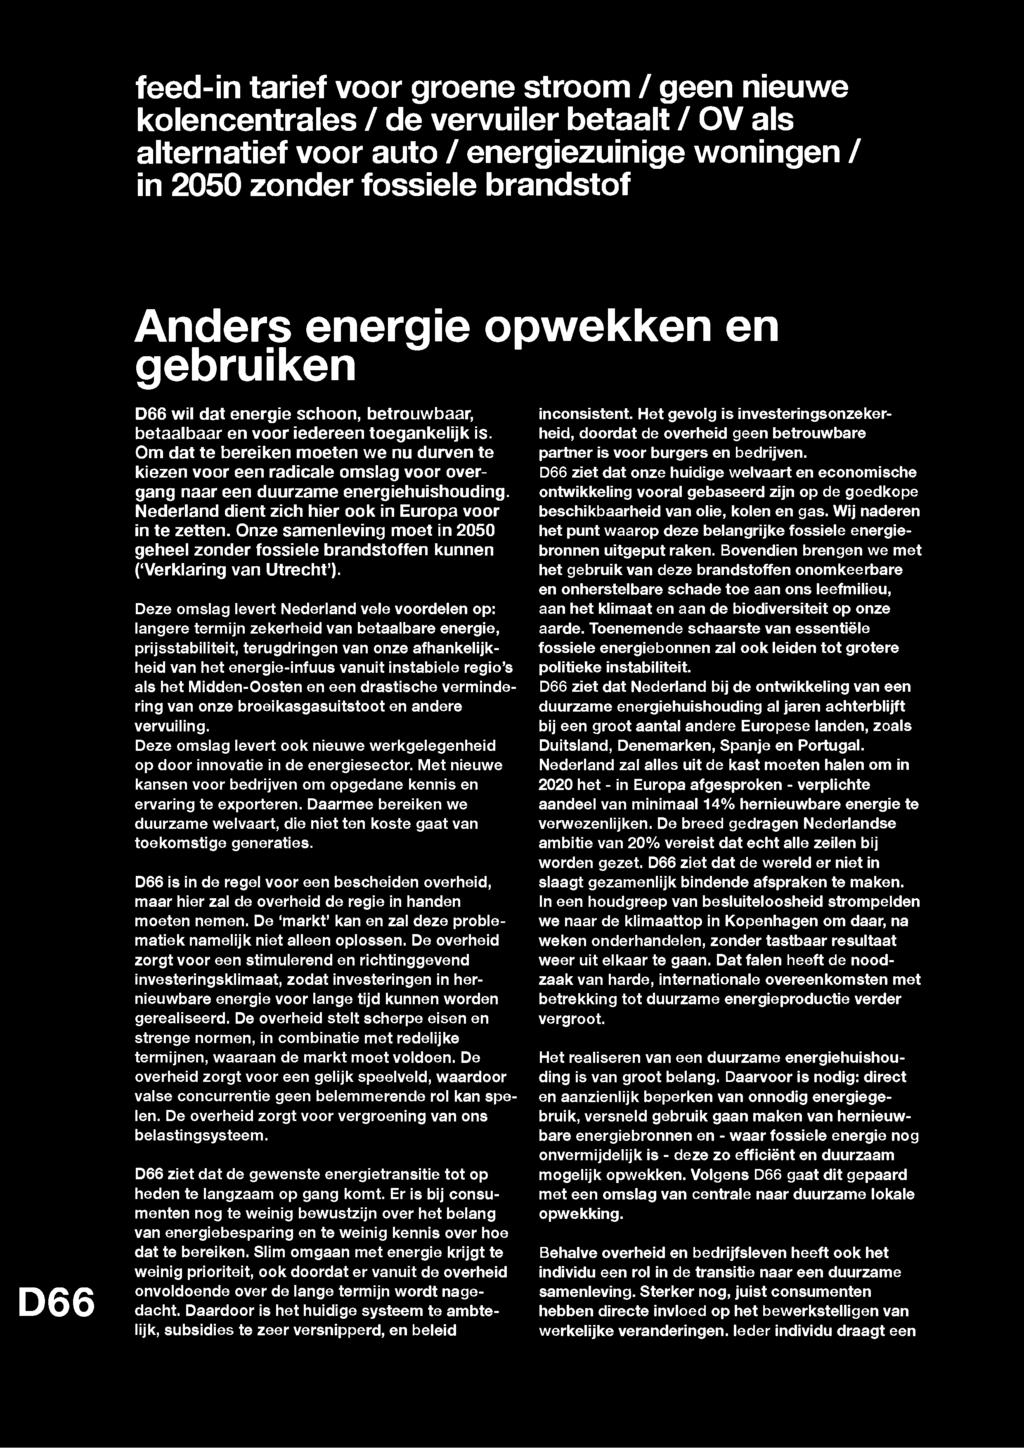 feed-in tarief voor groene stroom / geen nieuwe kolencentrales / de vervuiler betaalt / OV als alternatief voor auto / energiezuinige woningen / in 2050 zonder fossiele brandstof D66 Anders energie